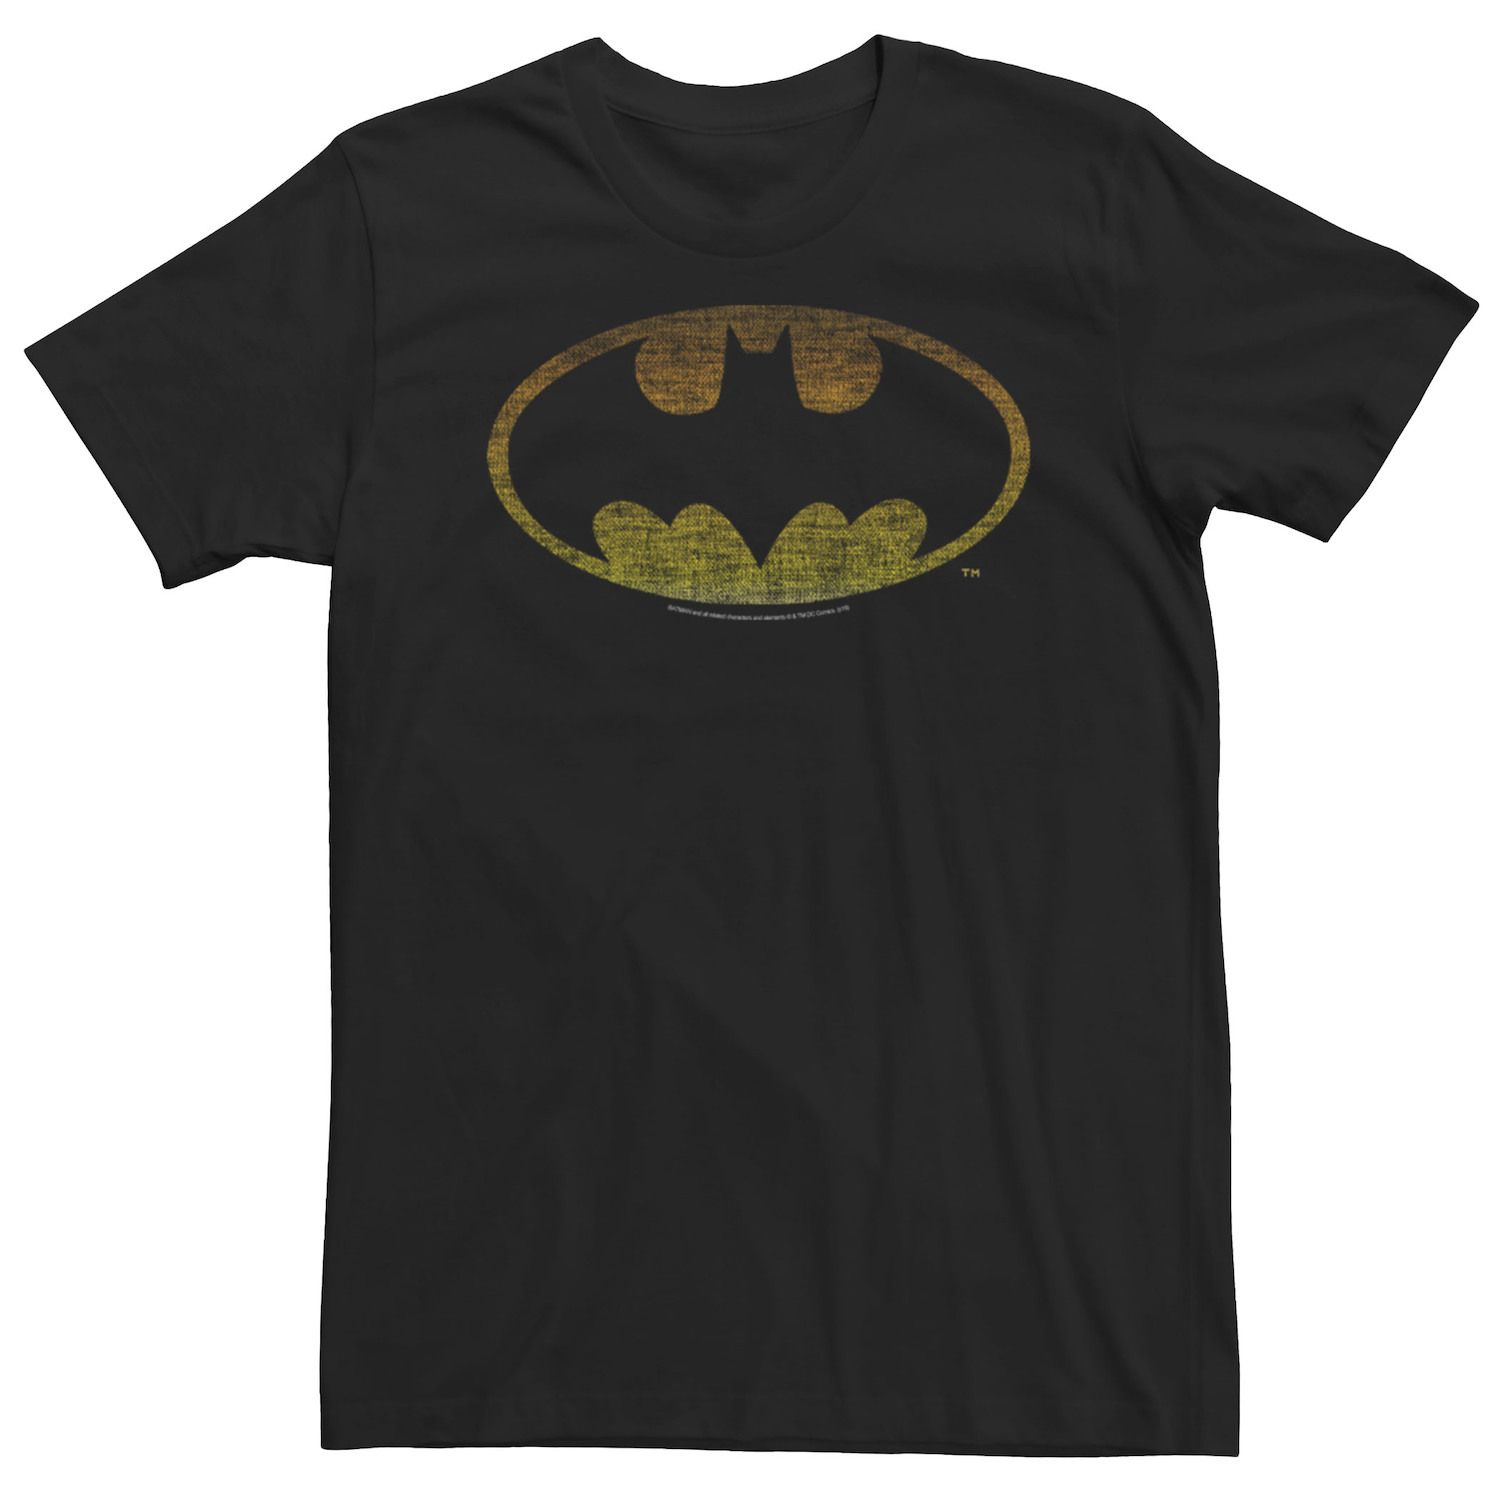 Мужская футболка с рваным логотипом Бэтмена DC Comics